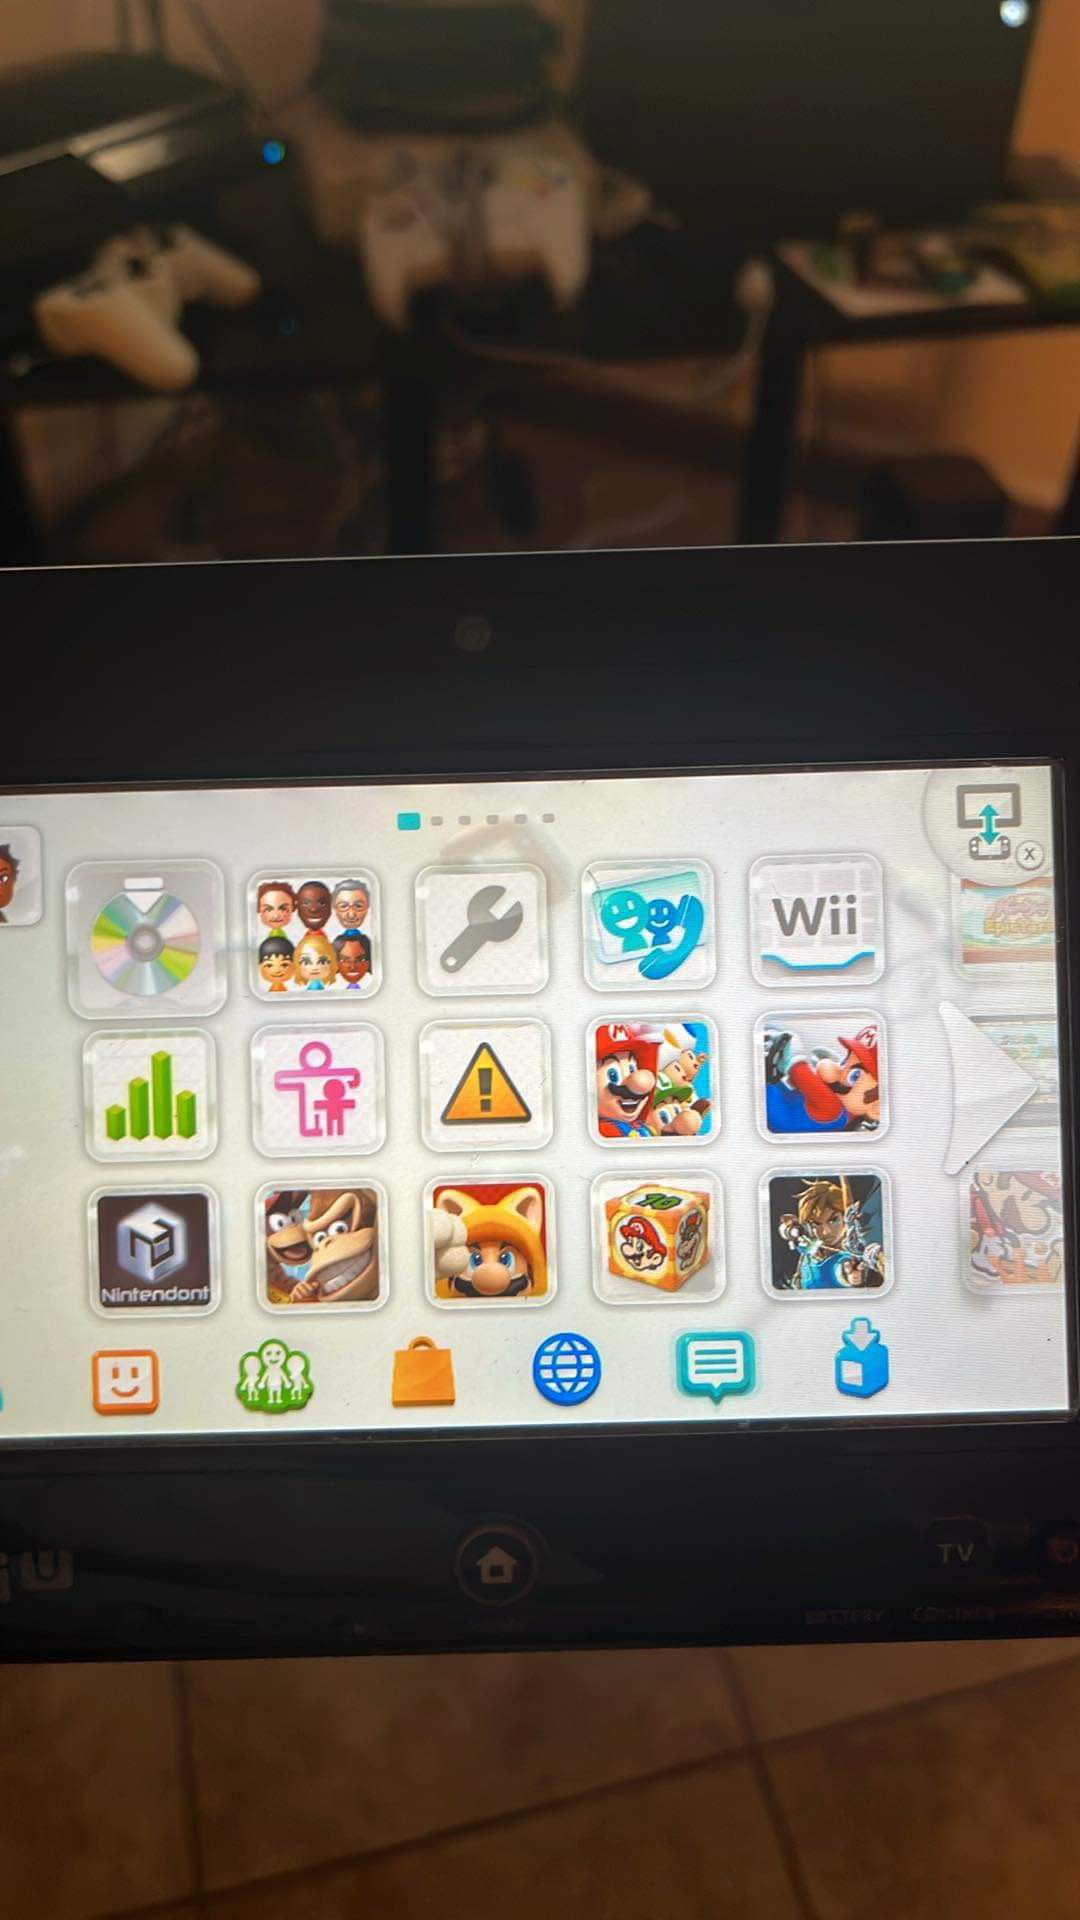 Loaded Wii U